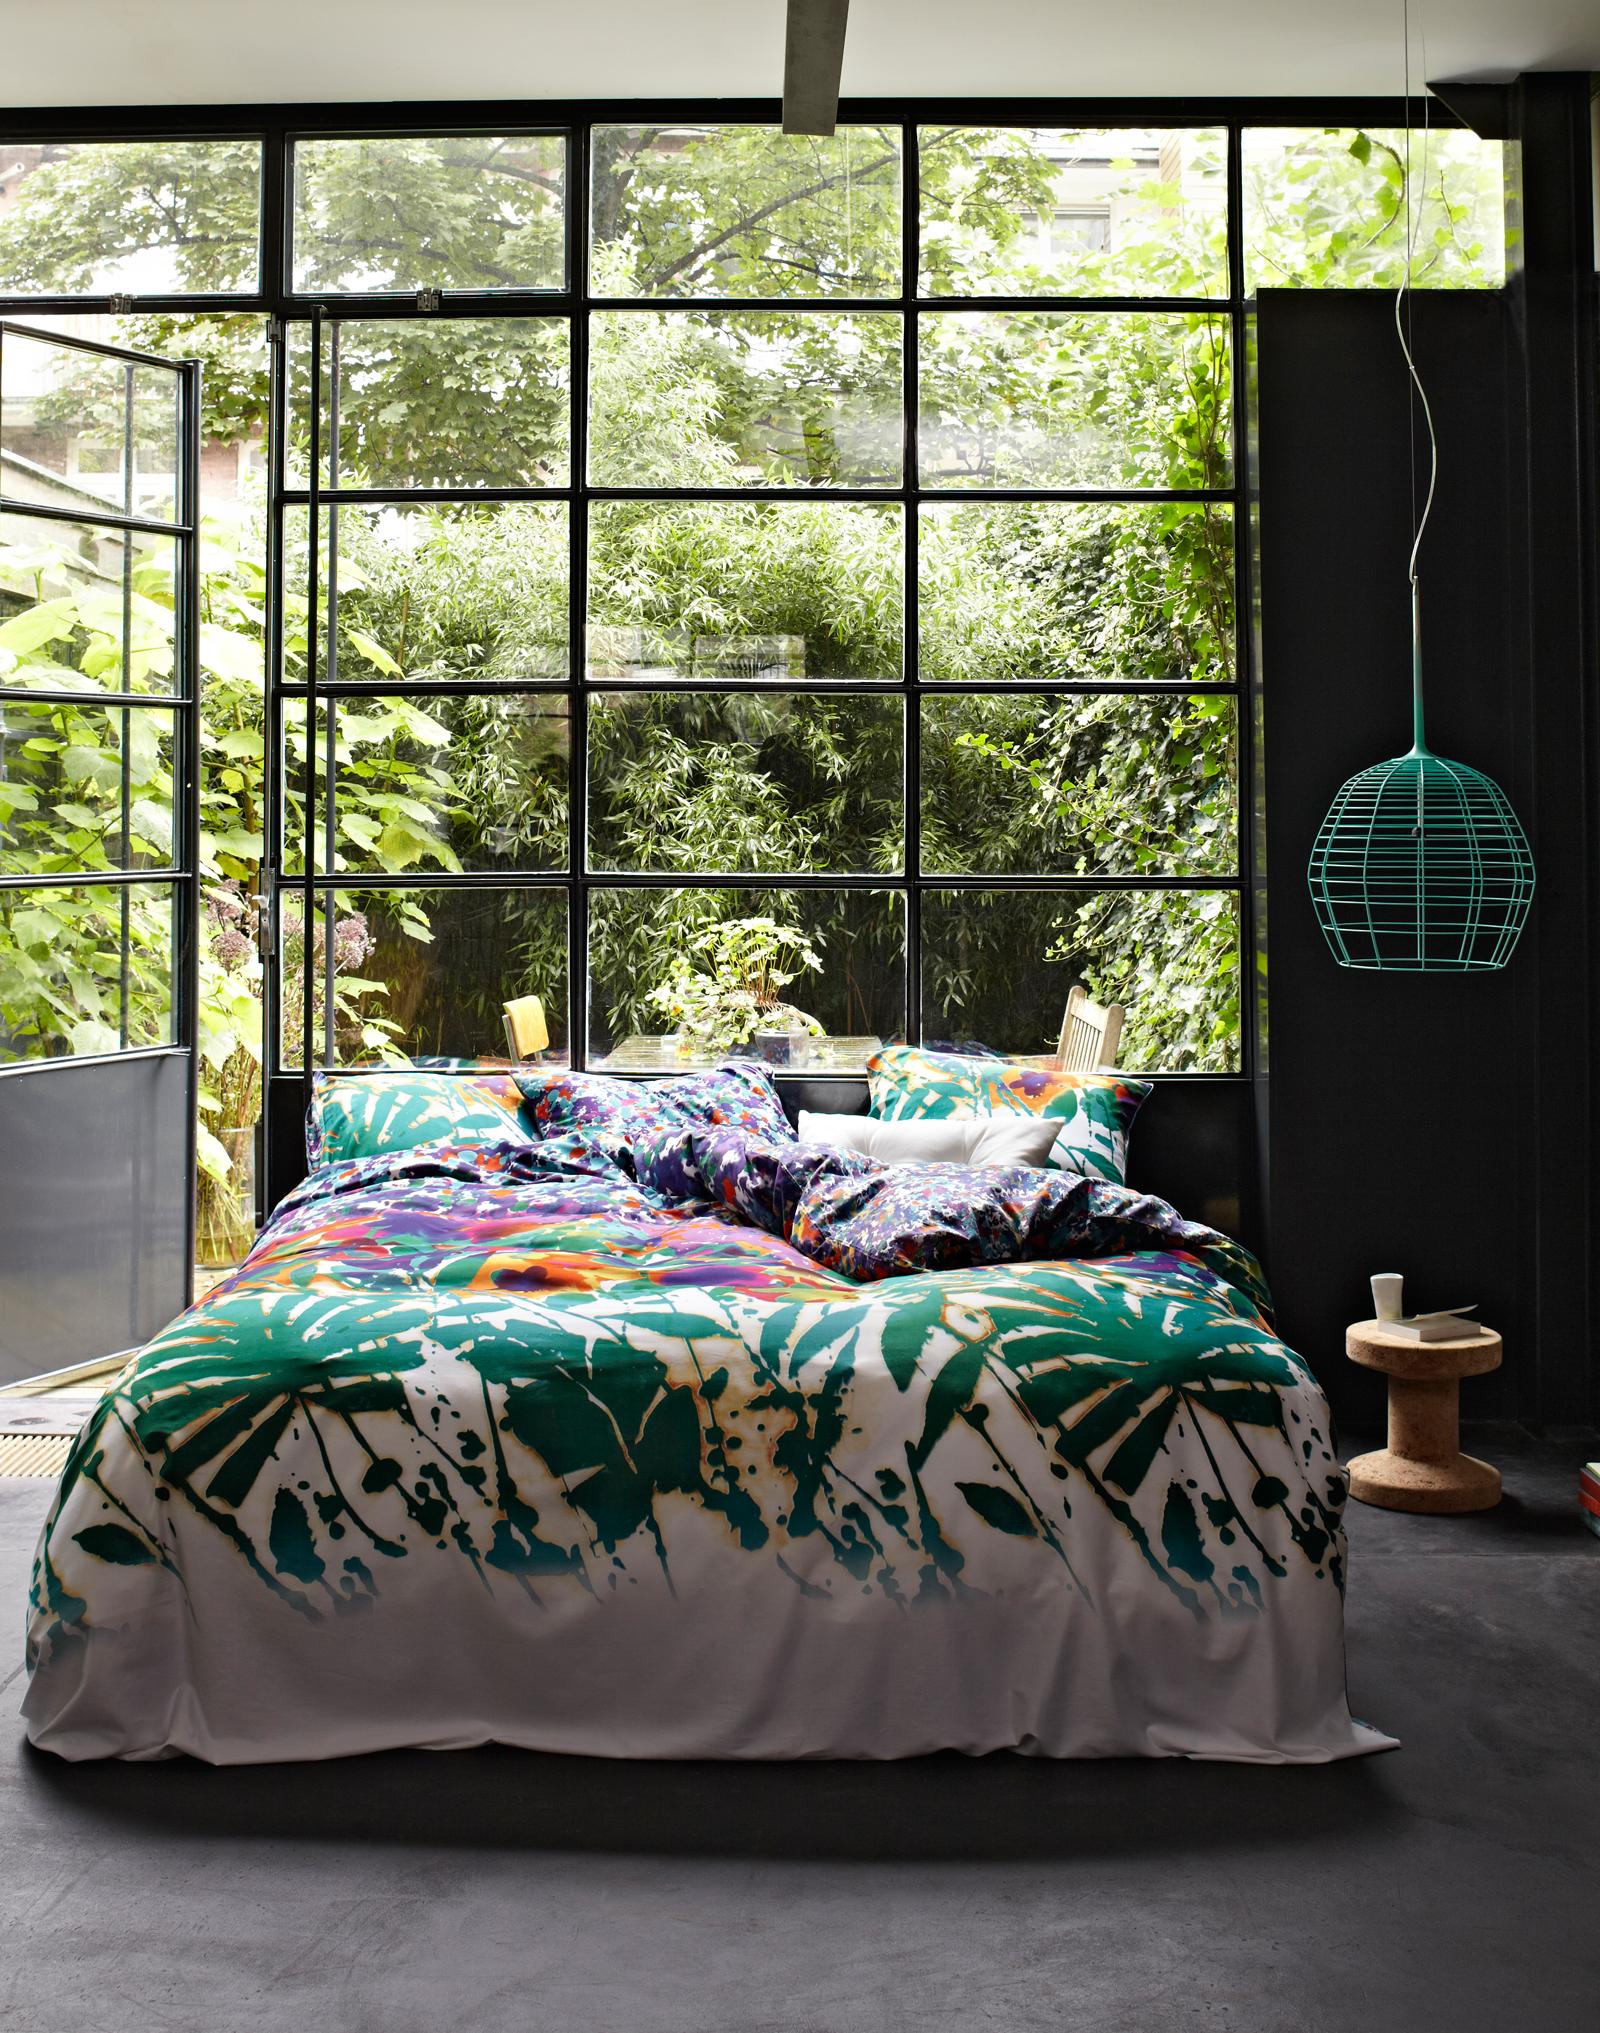 Naturnähe im Schlafzimmer #fensterfront #bettwäsche #loft #sprossenfenster #innenhof #hausgestaltung ©Essenza Home/Essenza